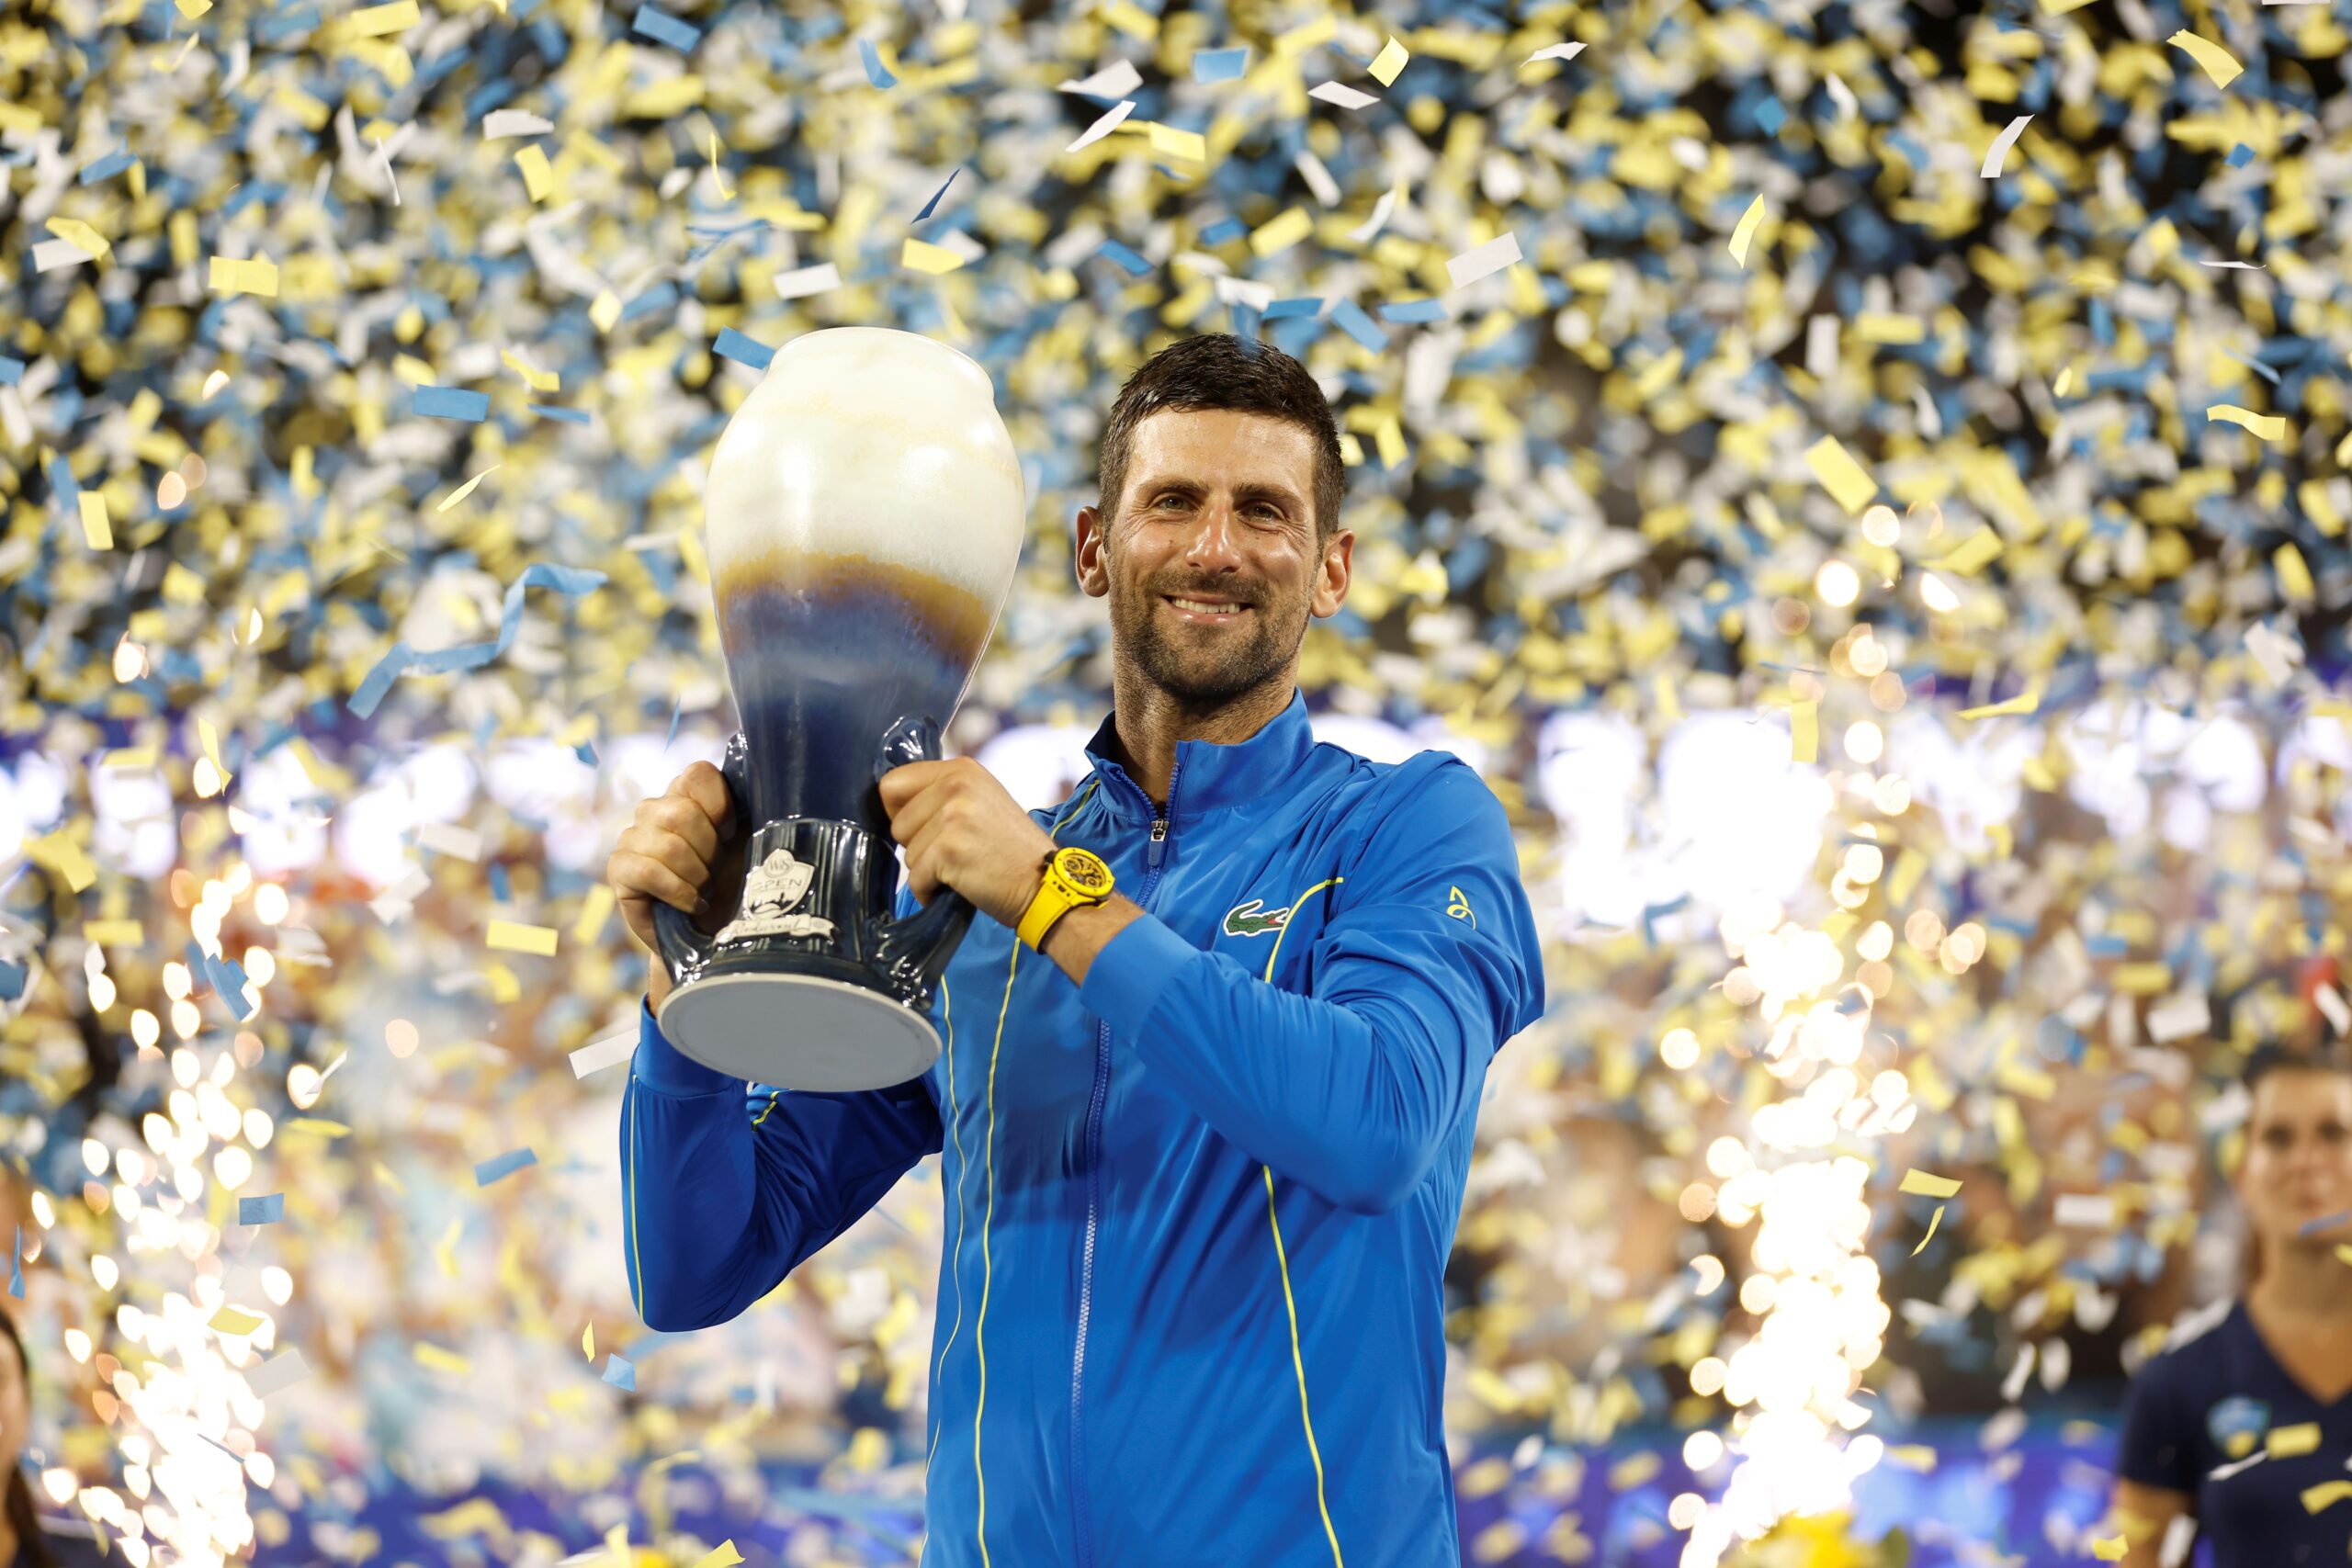 Novak Djokovic hoists a trophy